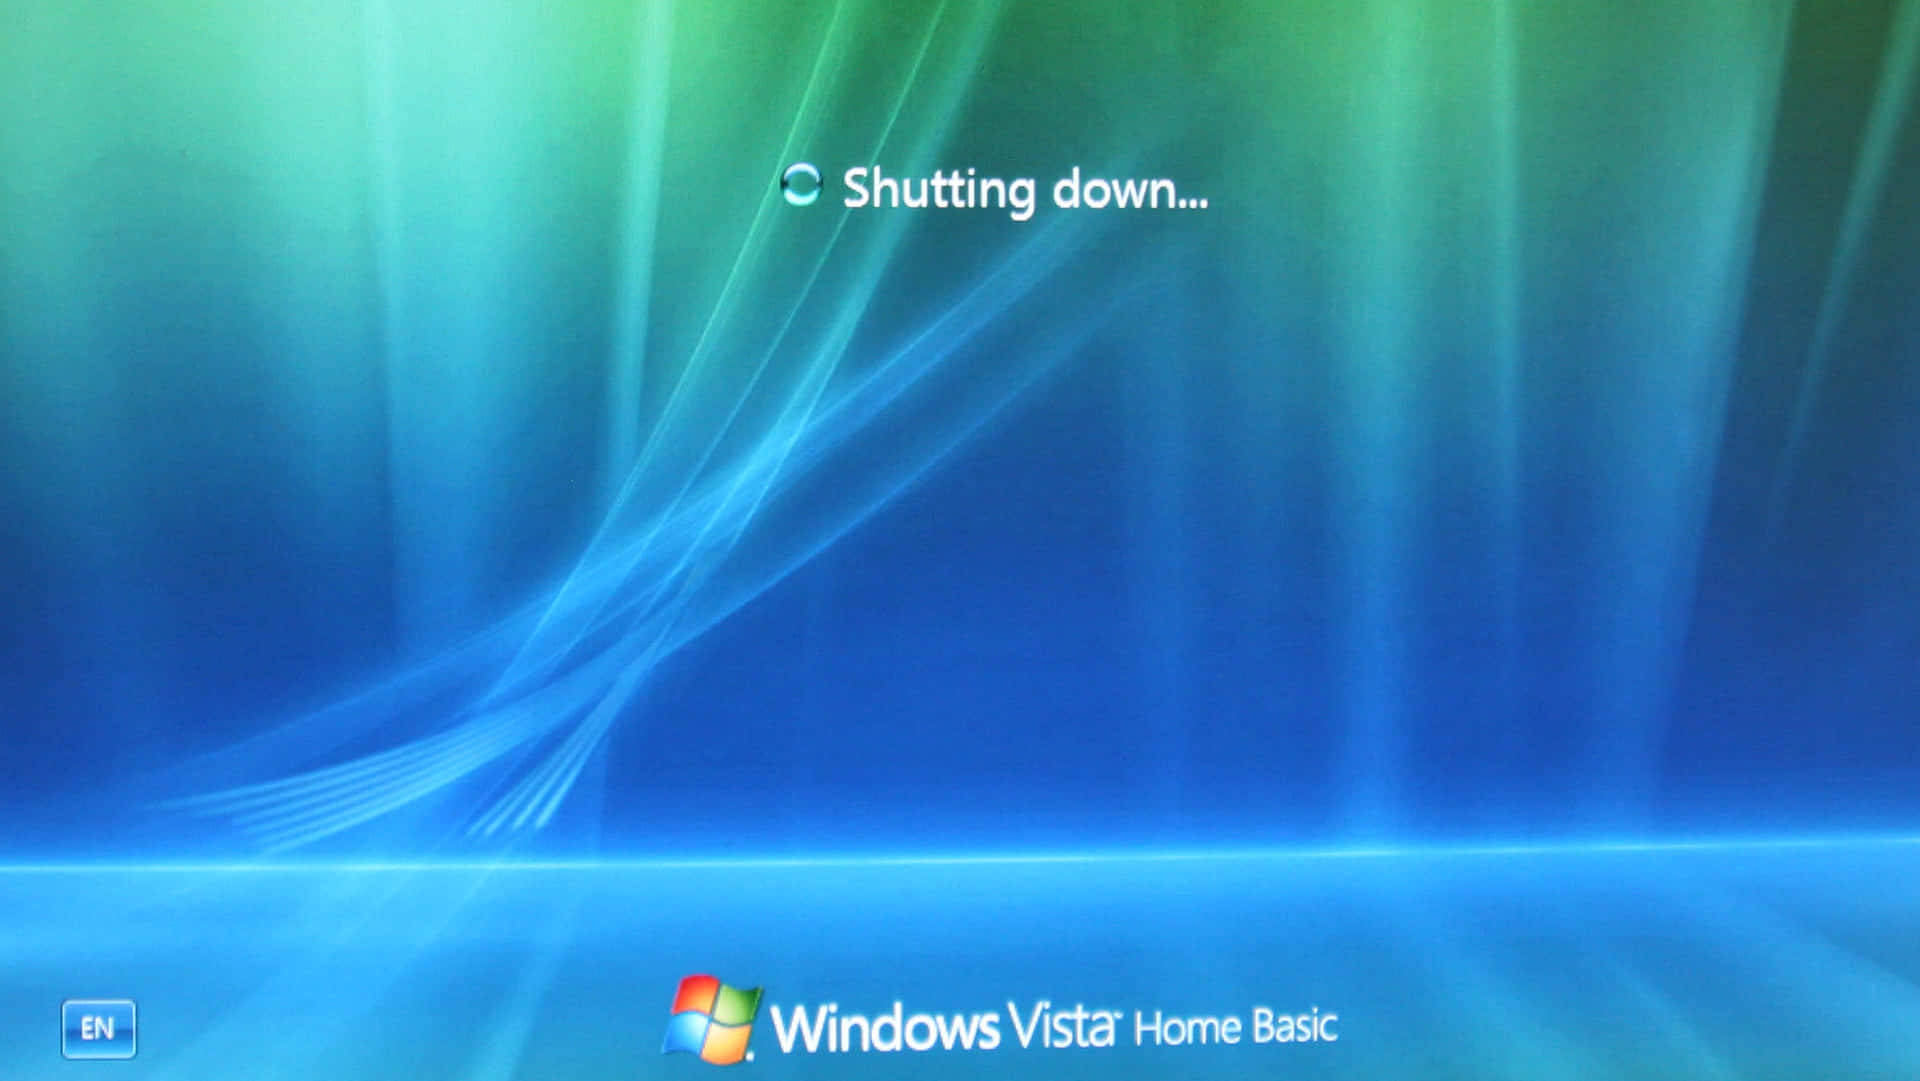 Billeder af Windows Vista med smukt blå himmel.